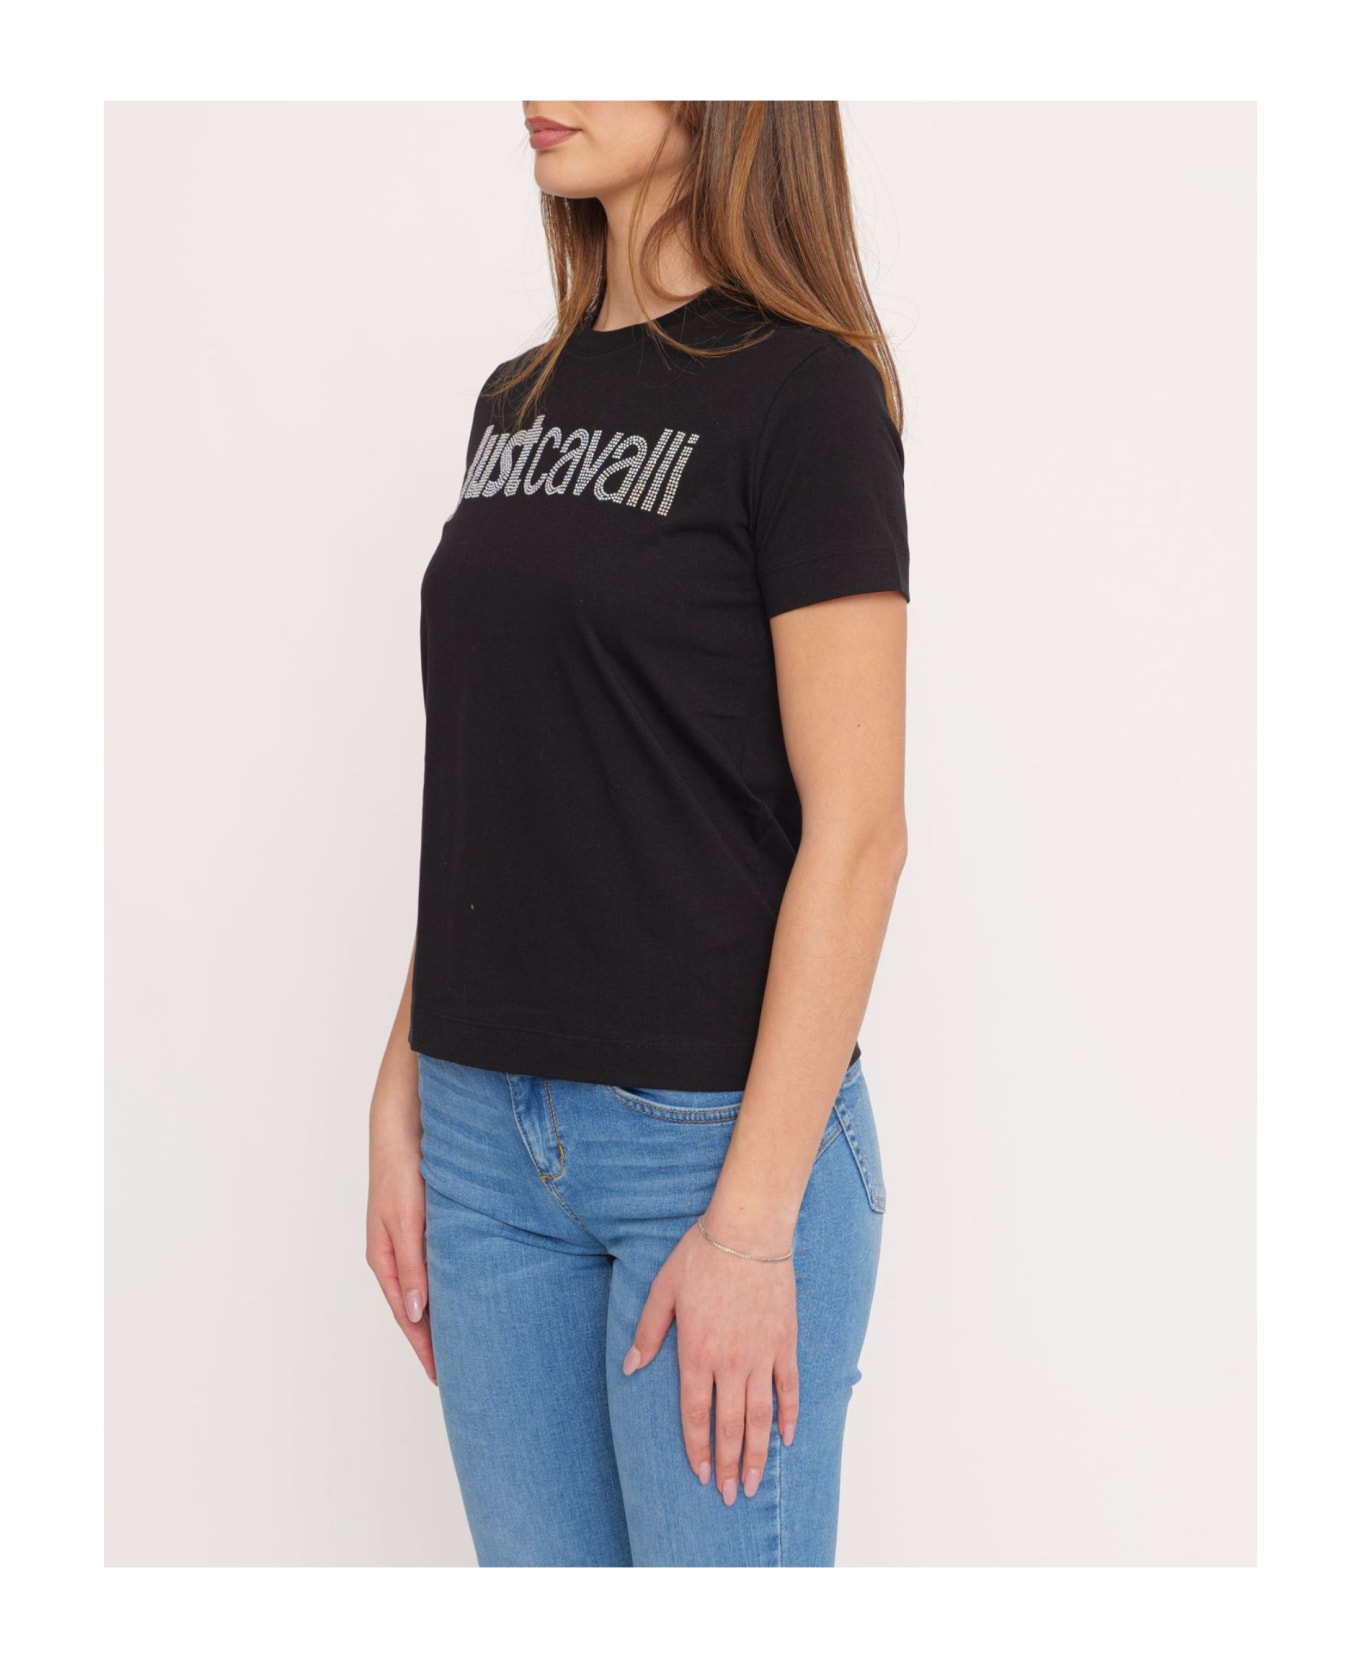 Just Cavalli T-shirt - Black Tシャツ